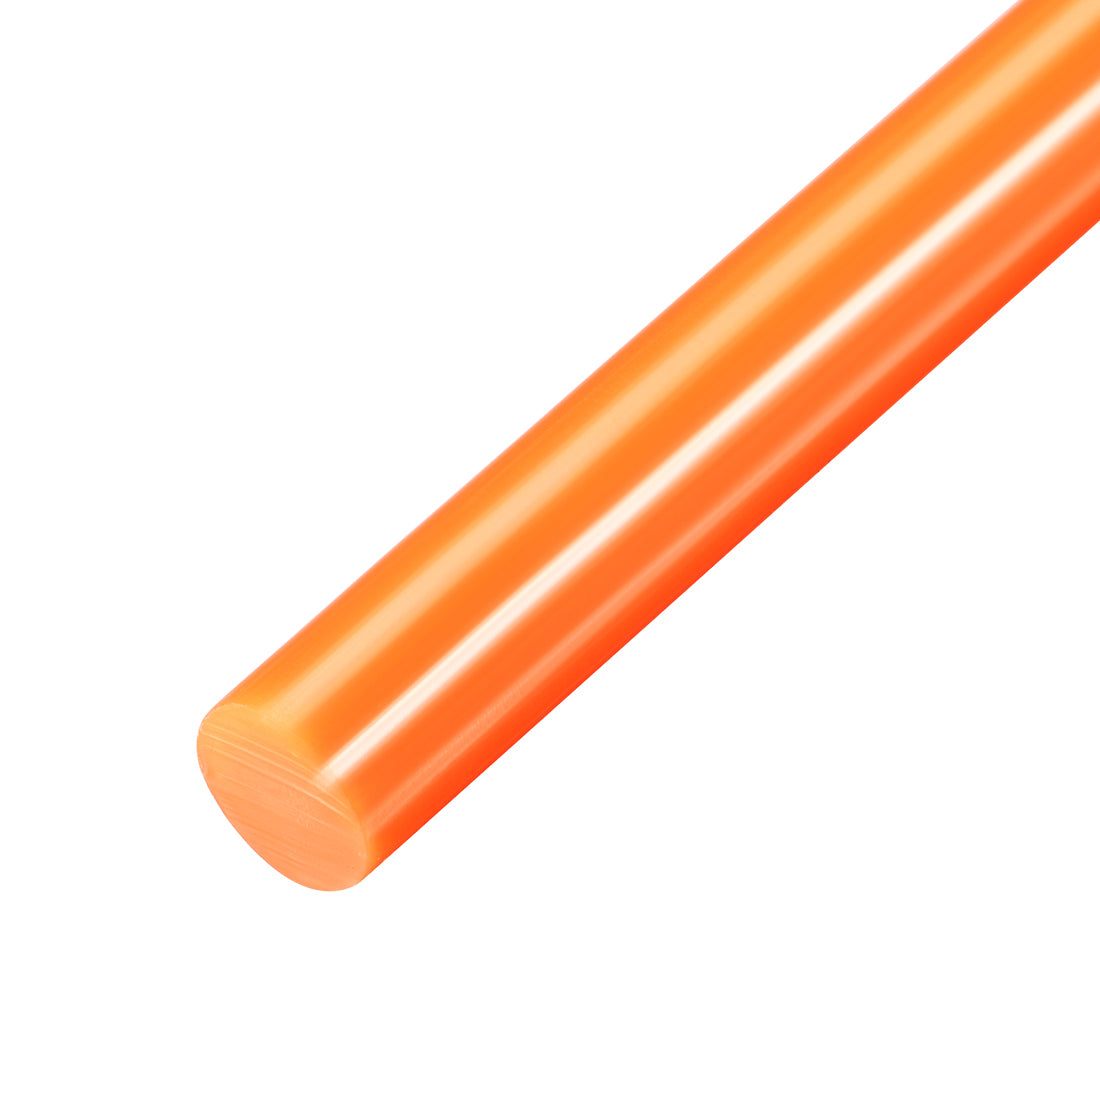 Uxcell Uxcell Hot Melt Glue Gun Sticks, 250mm Long x 7mm Diameter,for Most Glue Guns, Perfect for DIY Craft Projects and Sealing,Light Green,10pcs